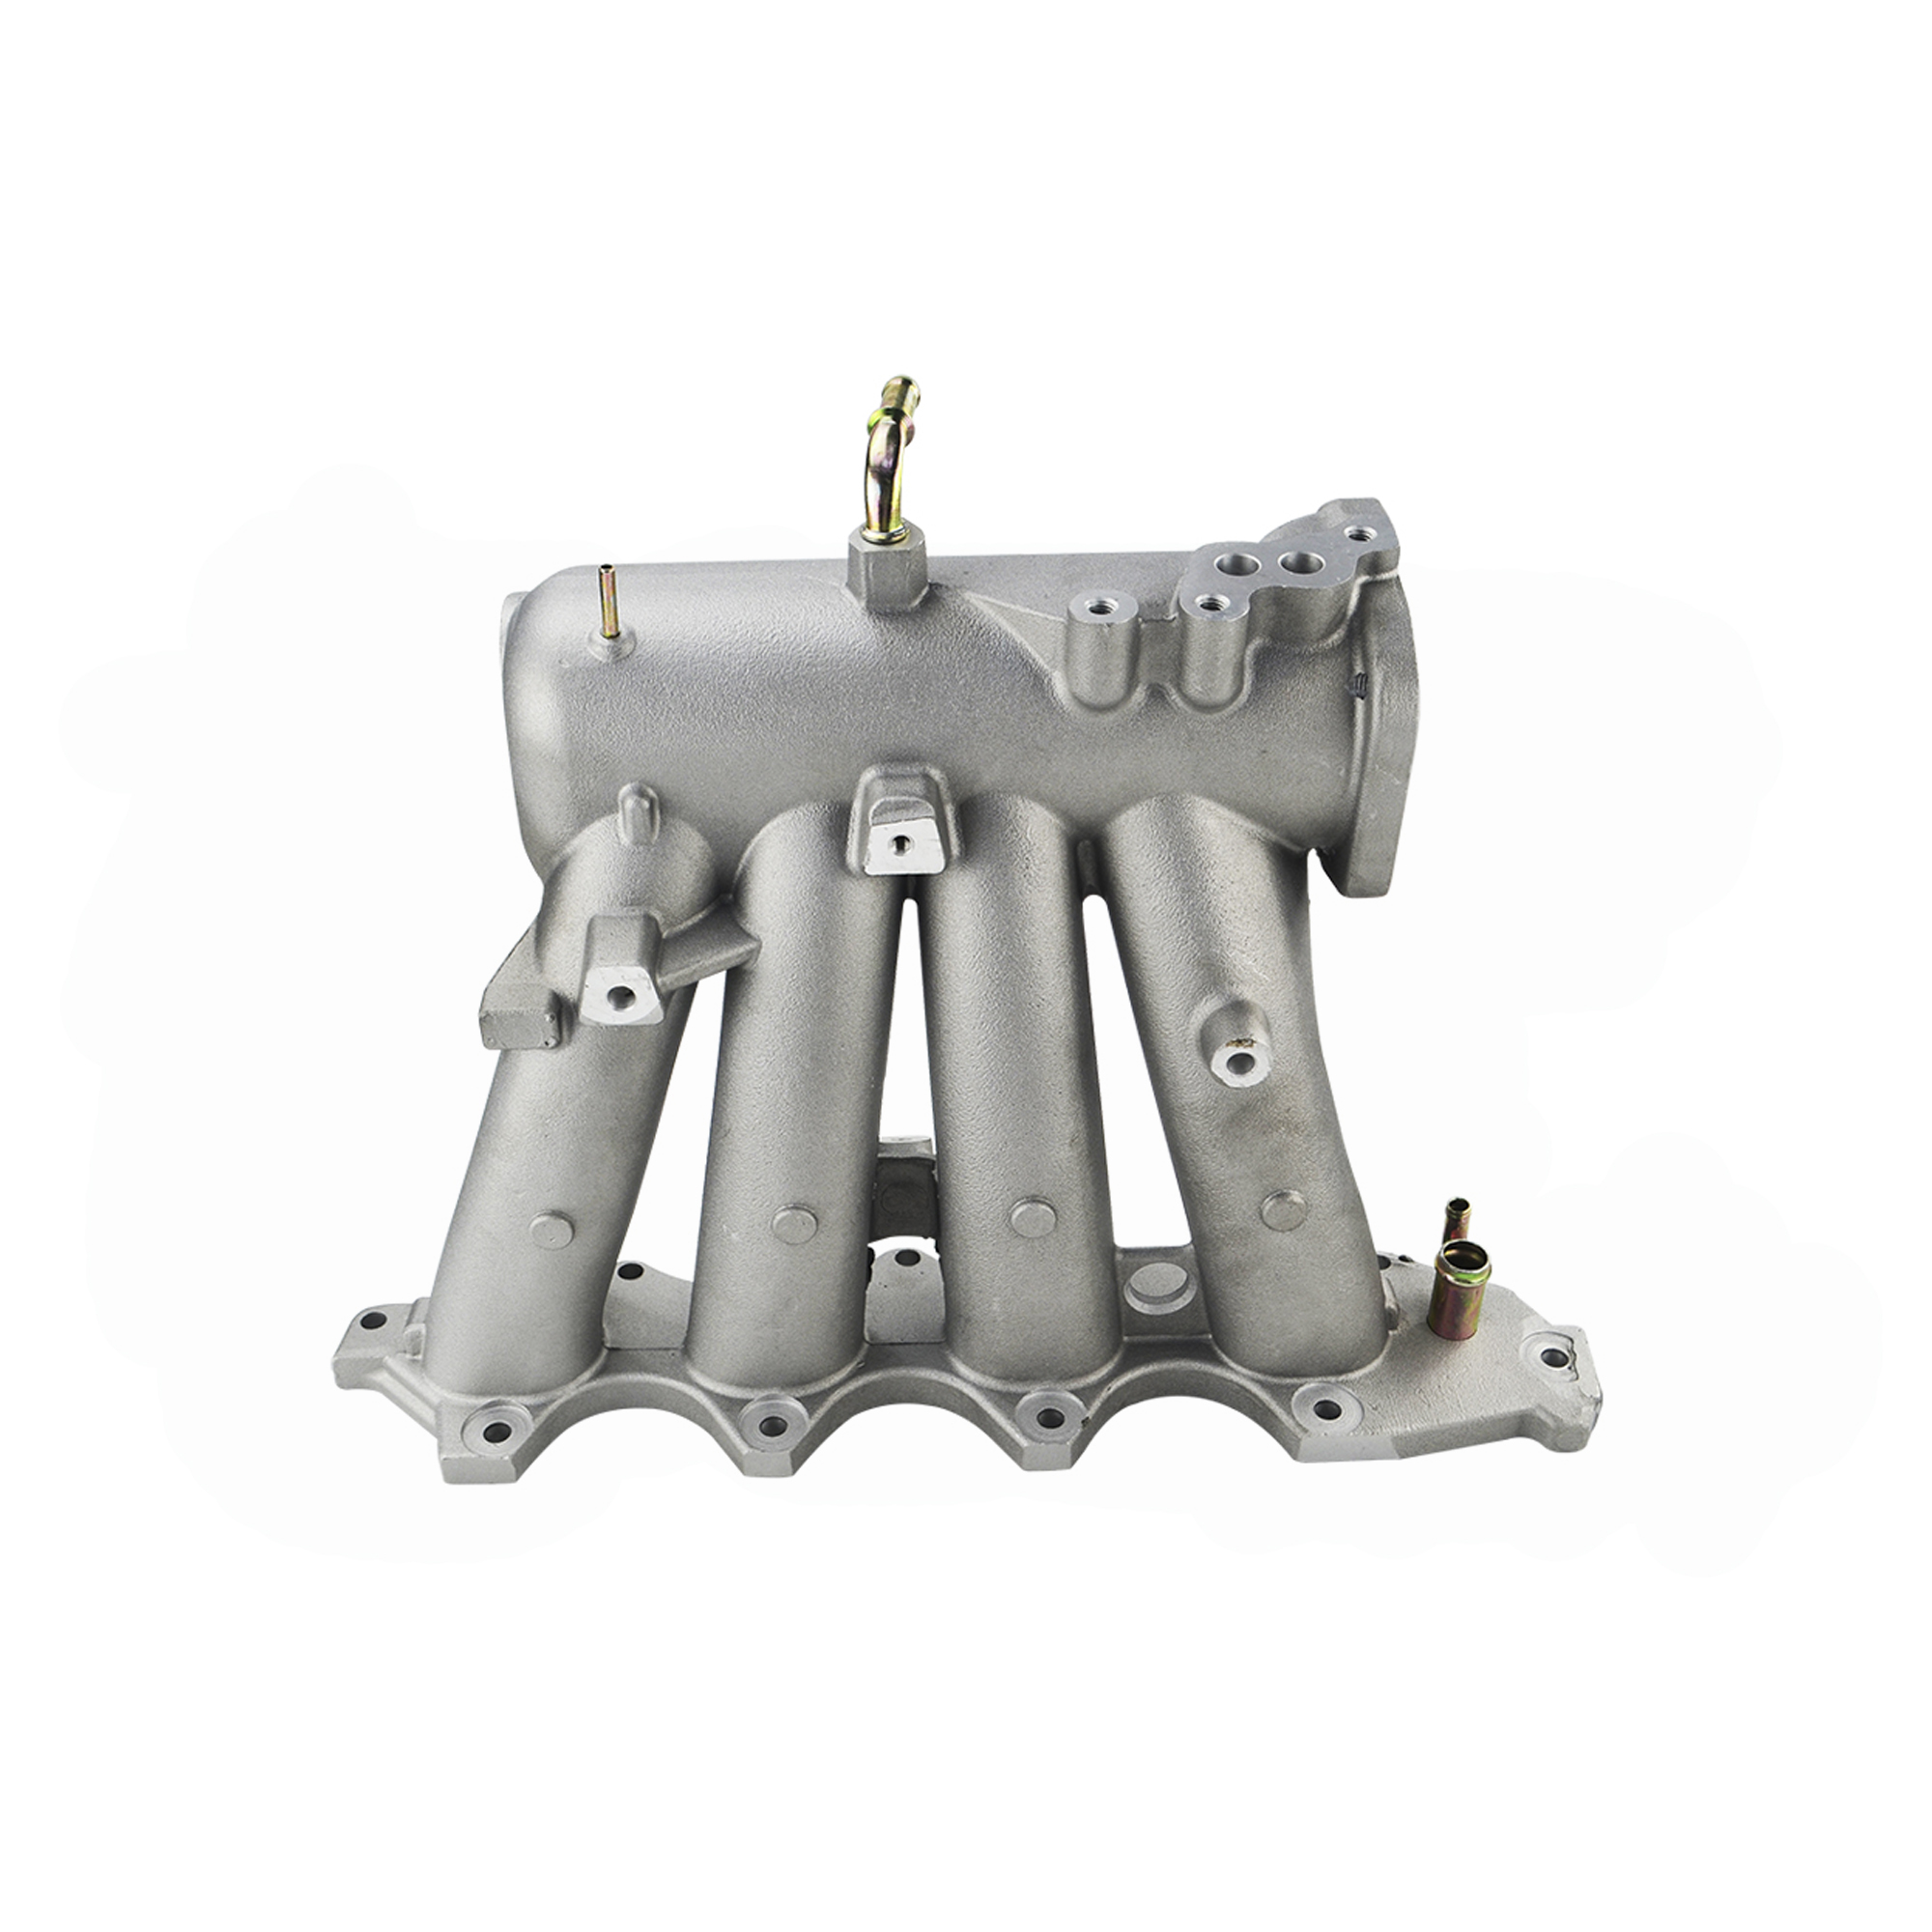 OEM Customized Low Pressure Aluminum Engine Block Casting(图11)